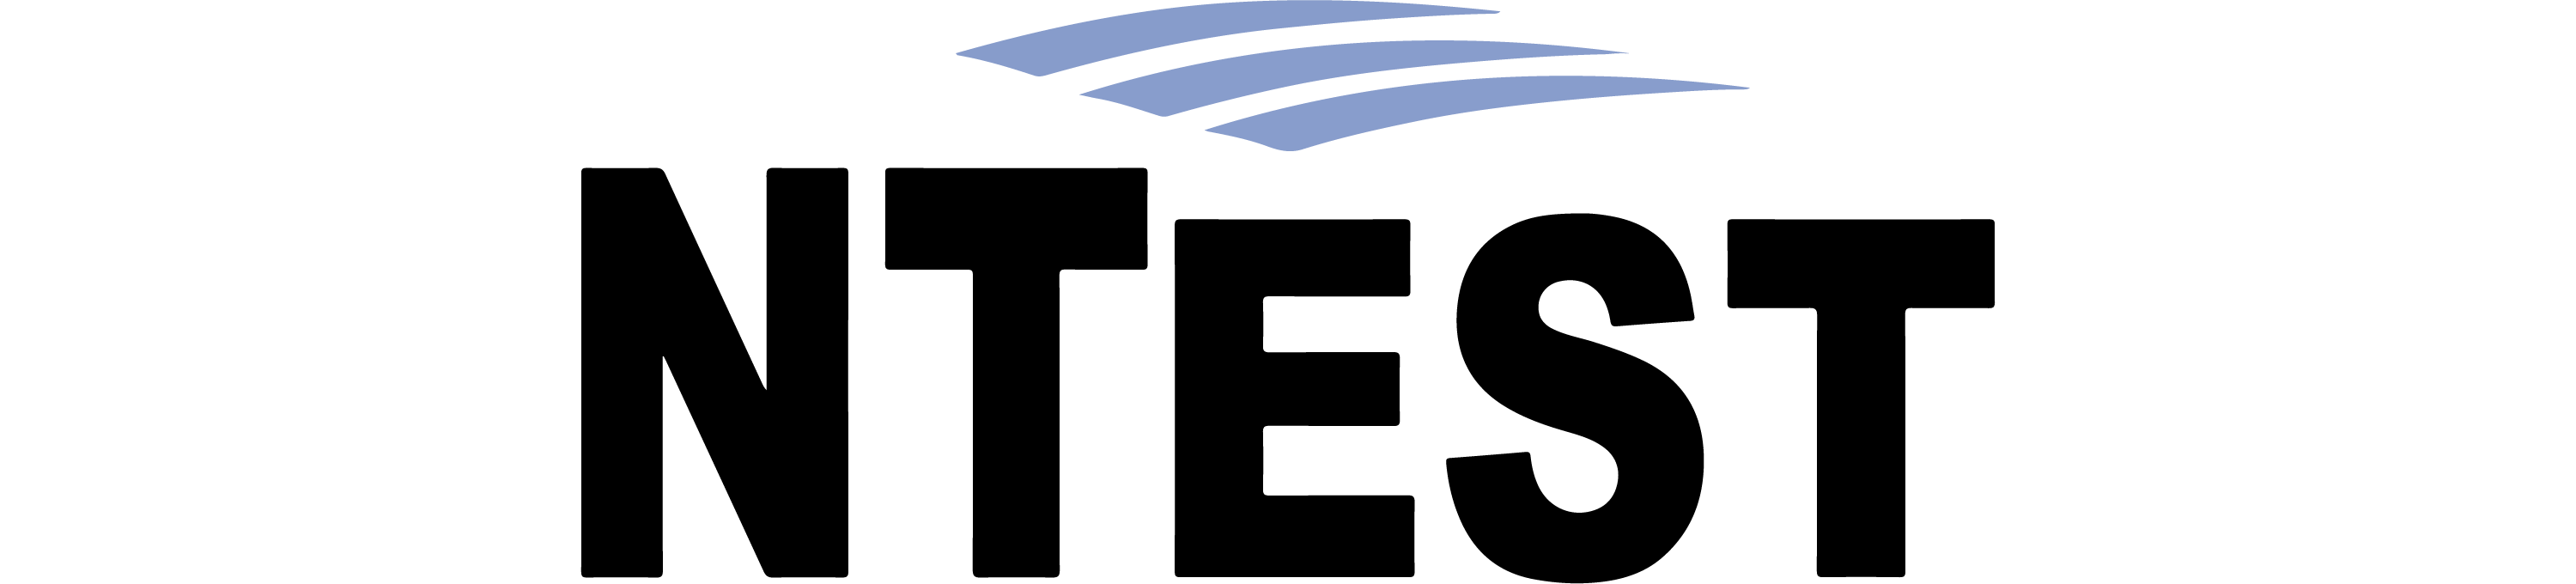 NTest_Logo-01